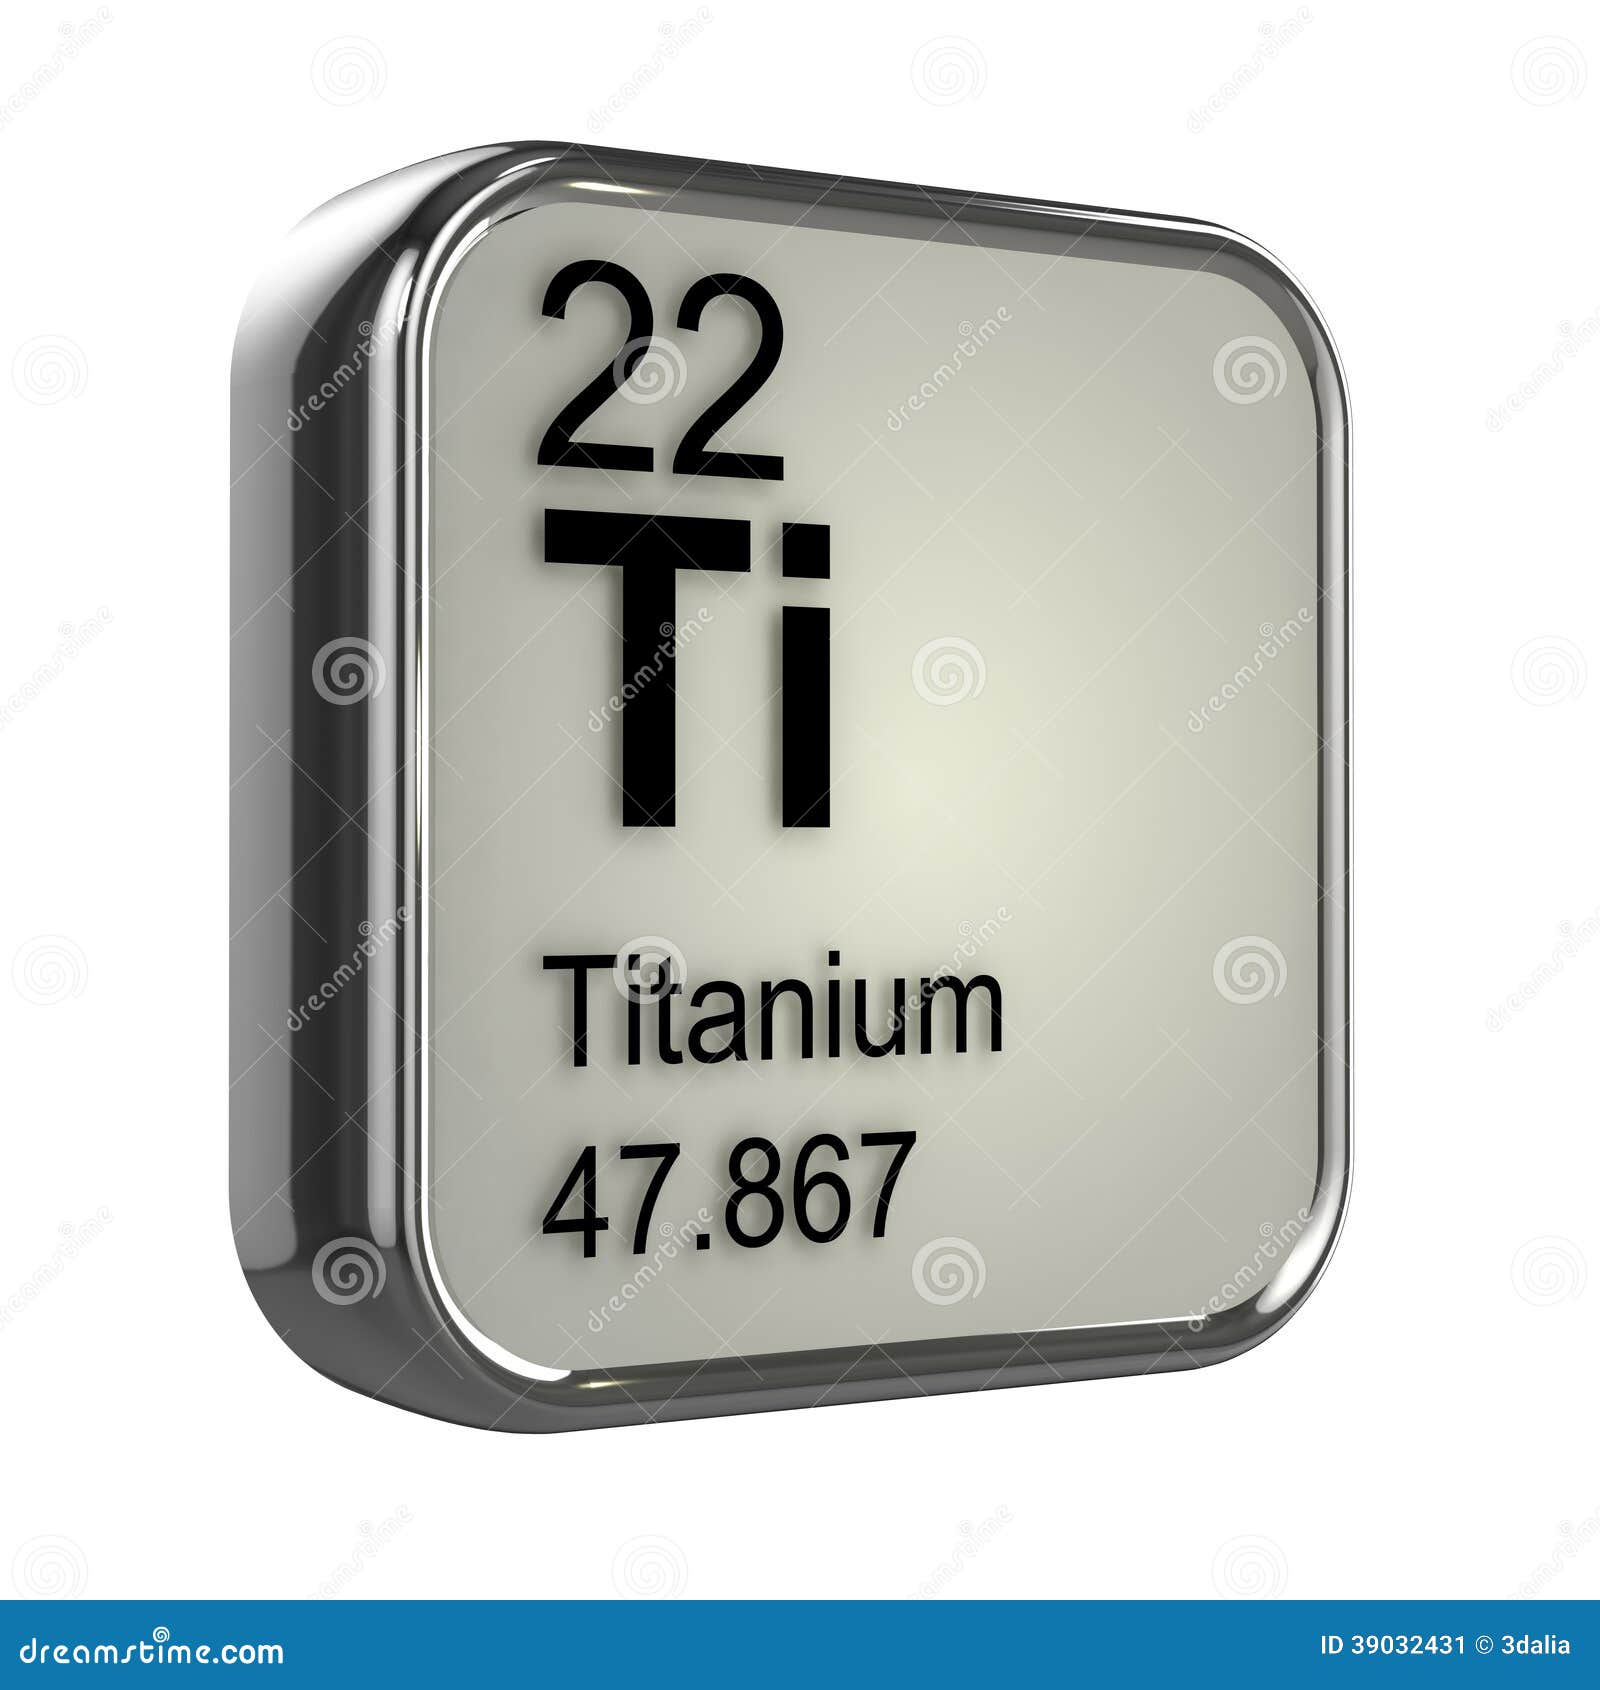 Titanium. Титан металл в таблице Менделеева. Титан элемент значок. Титан элемент таблицы Менделеева. Титан химический символ.